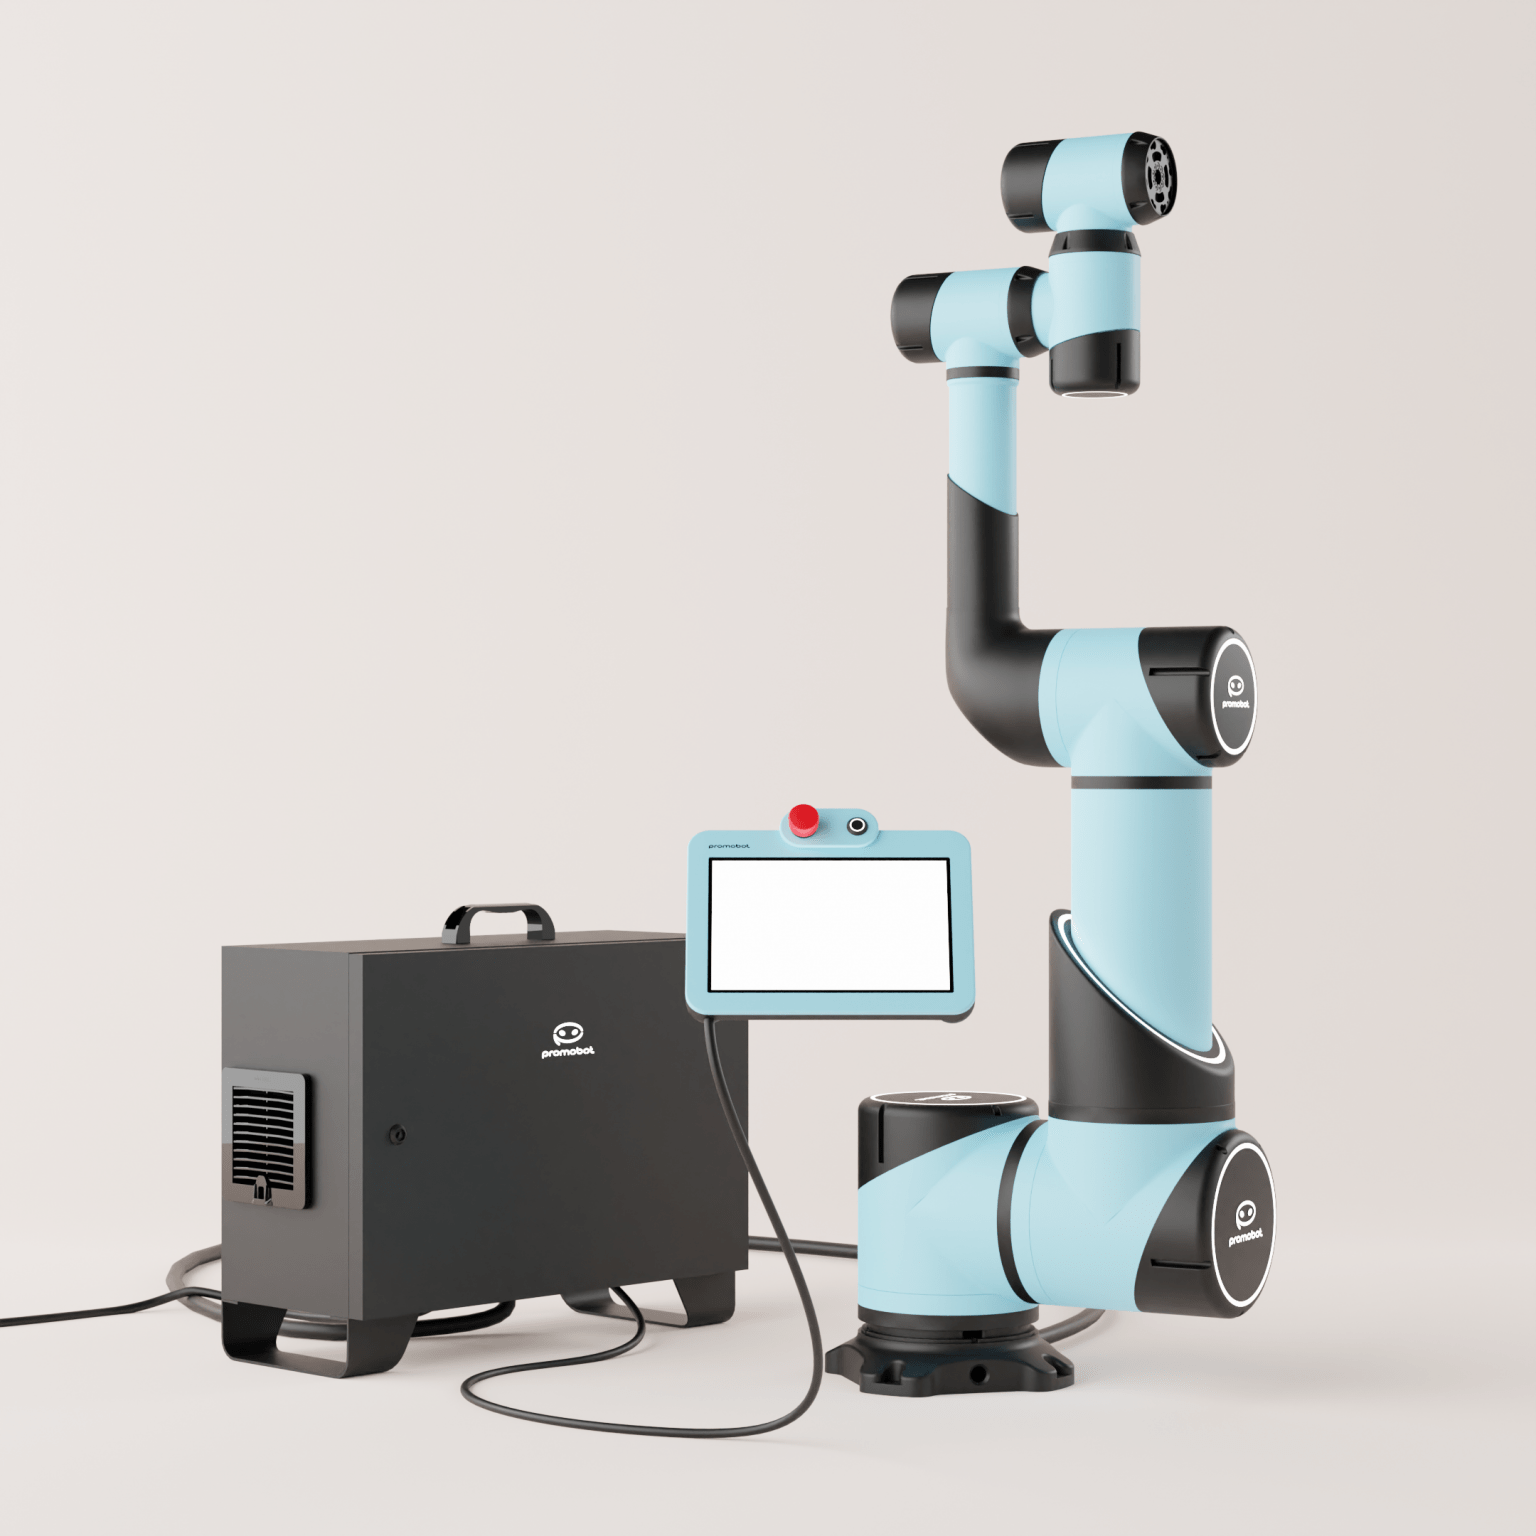 «Промобот» запускает производство роботов для предприятий 